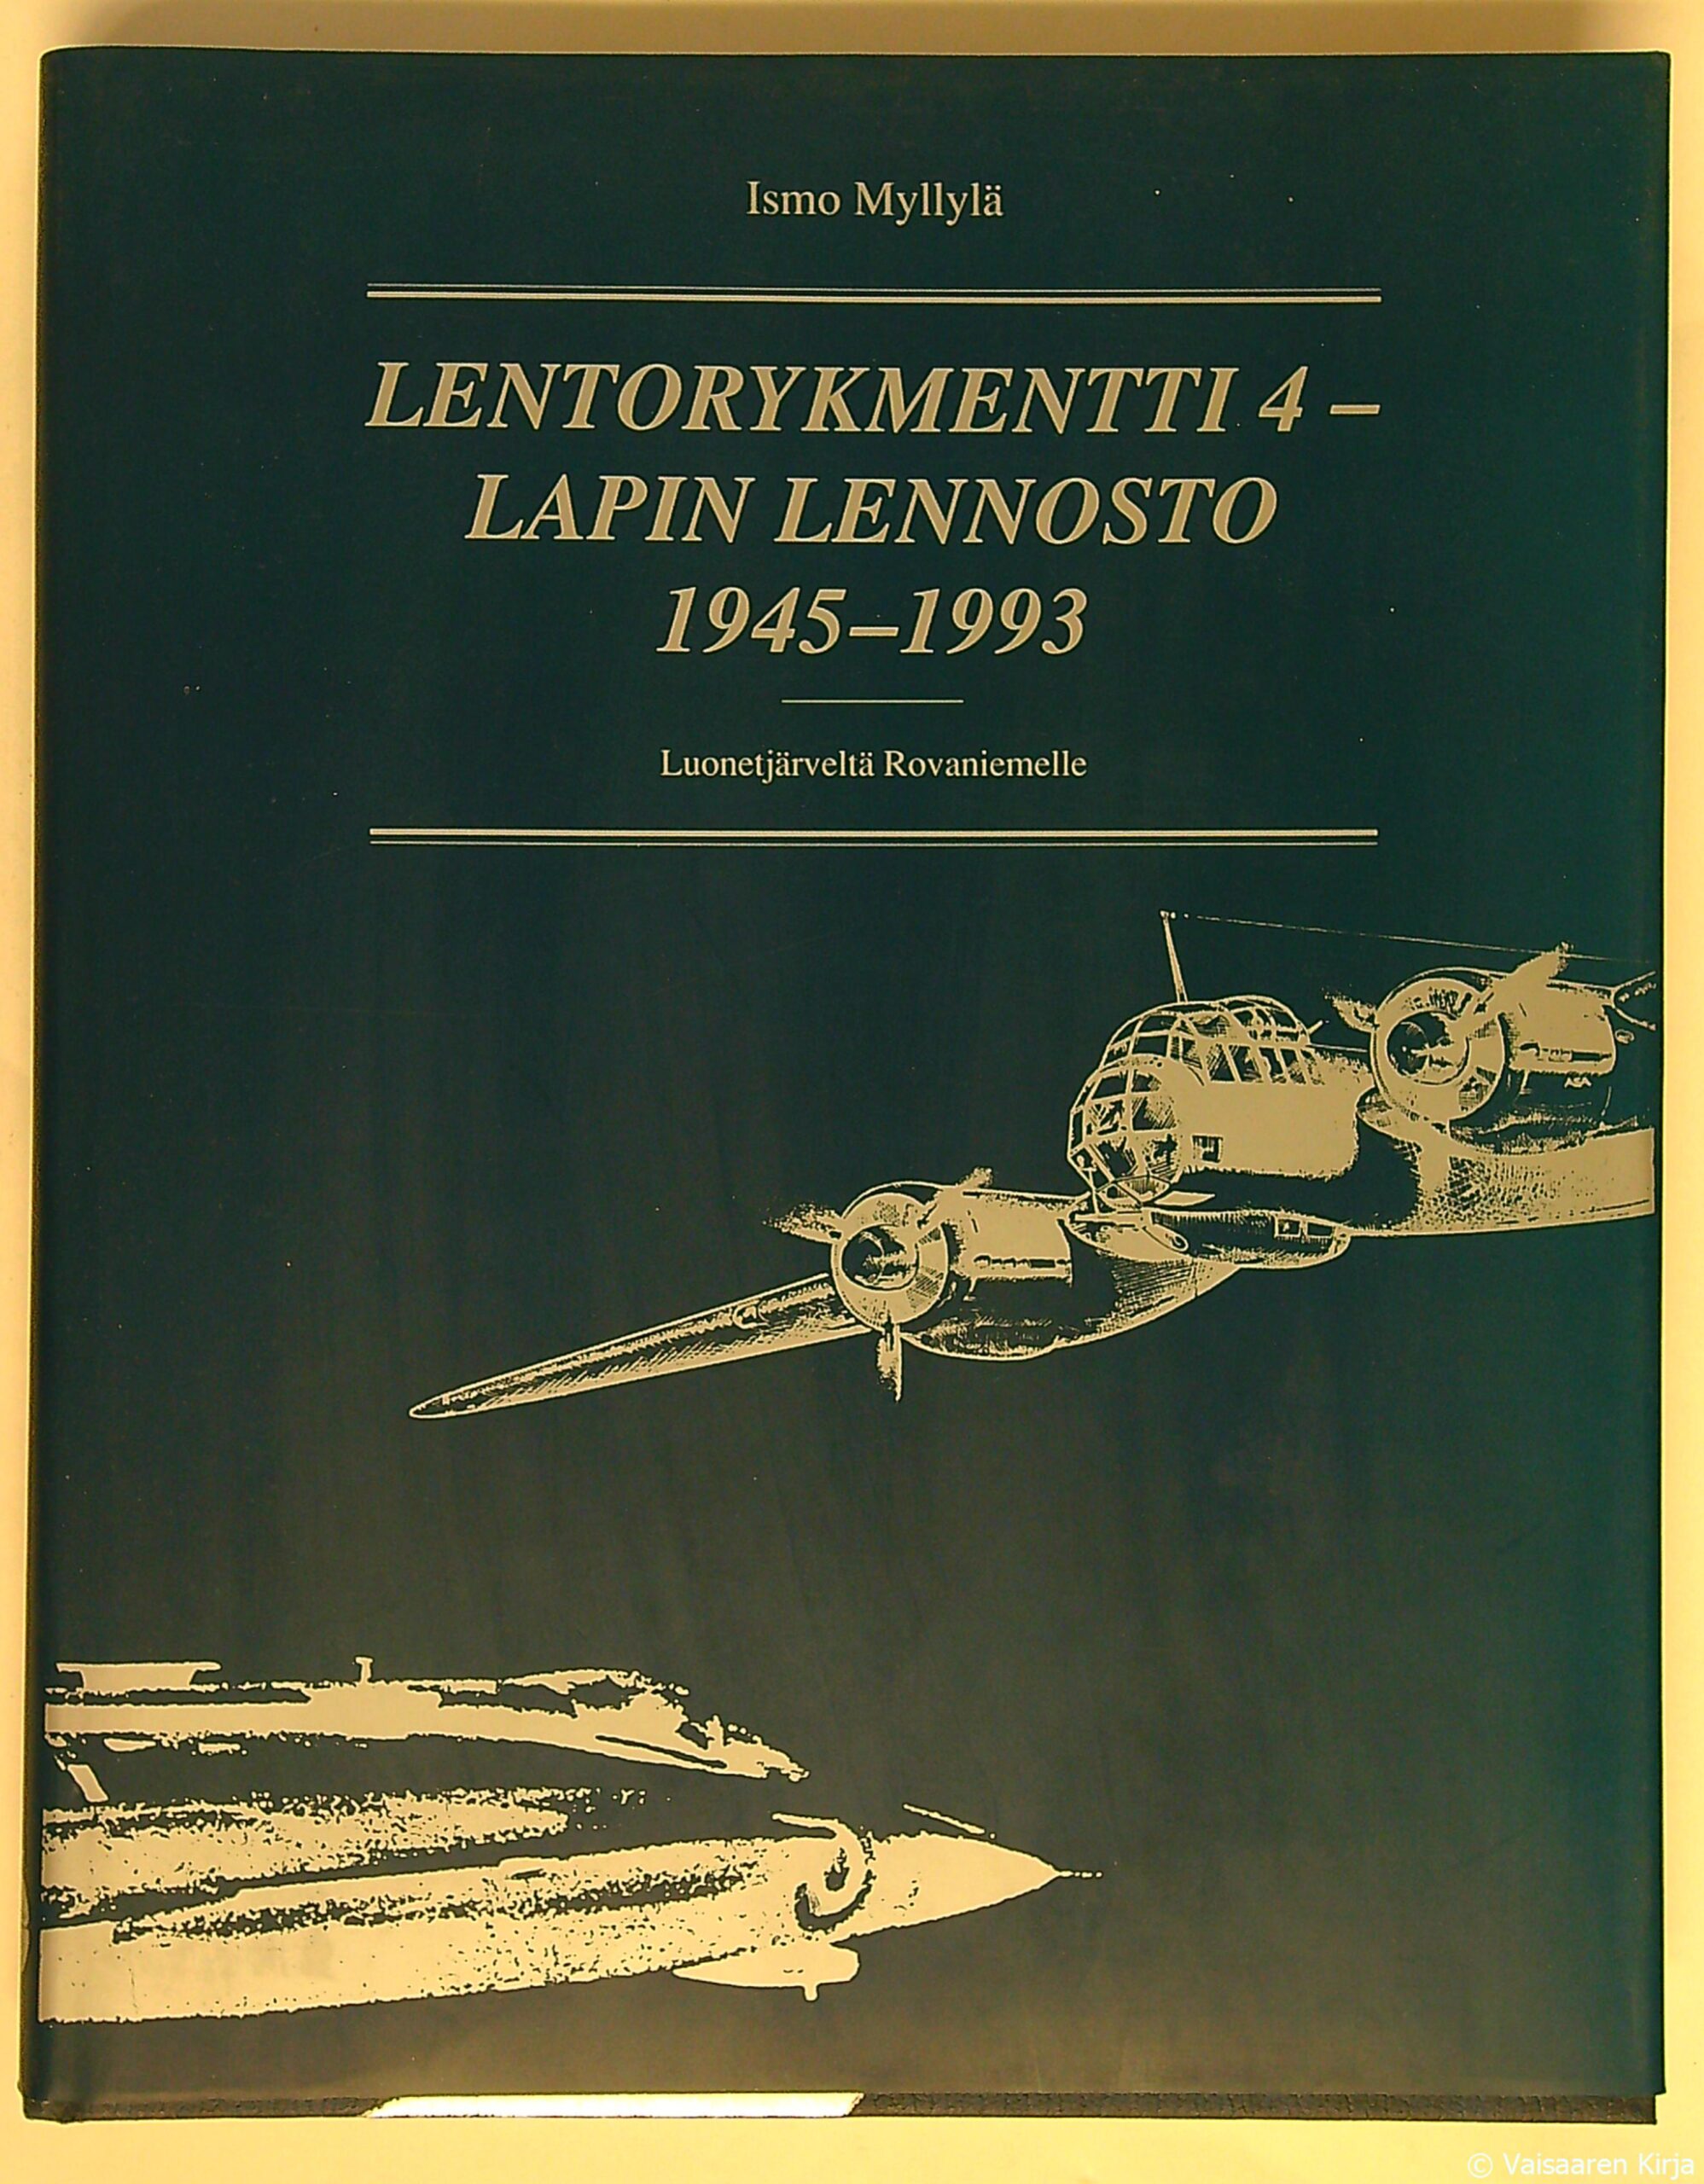 Lentorykmentti 4 - Lapin lennosto 1945-1993 - Luonetjärveltä Rovaniemelle